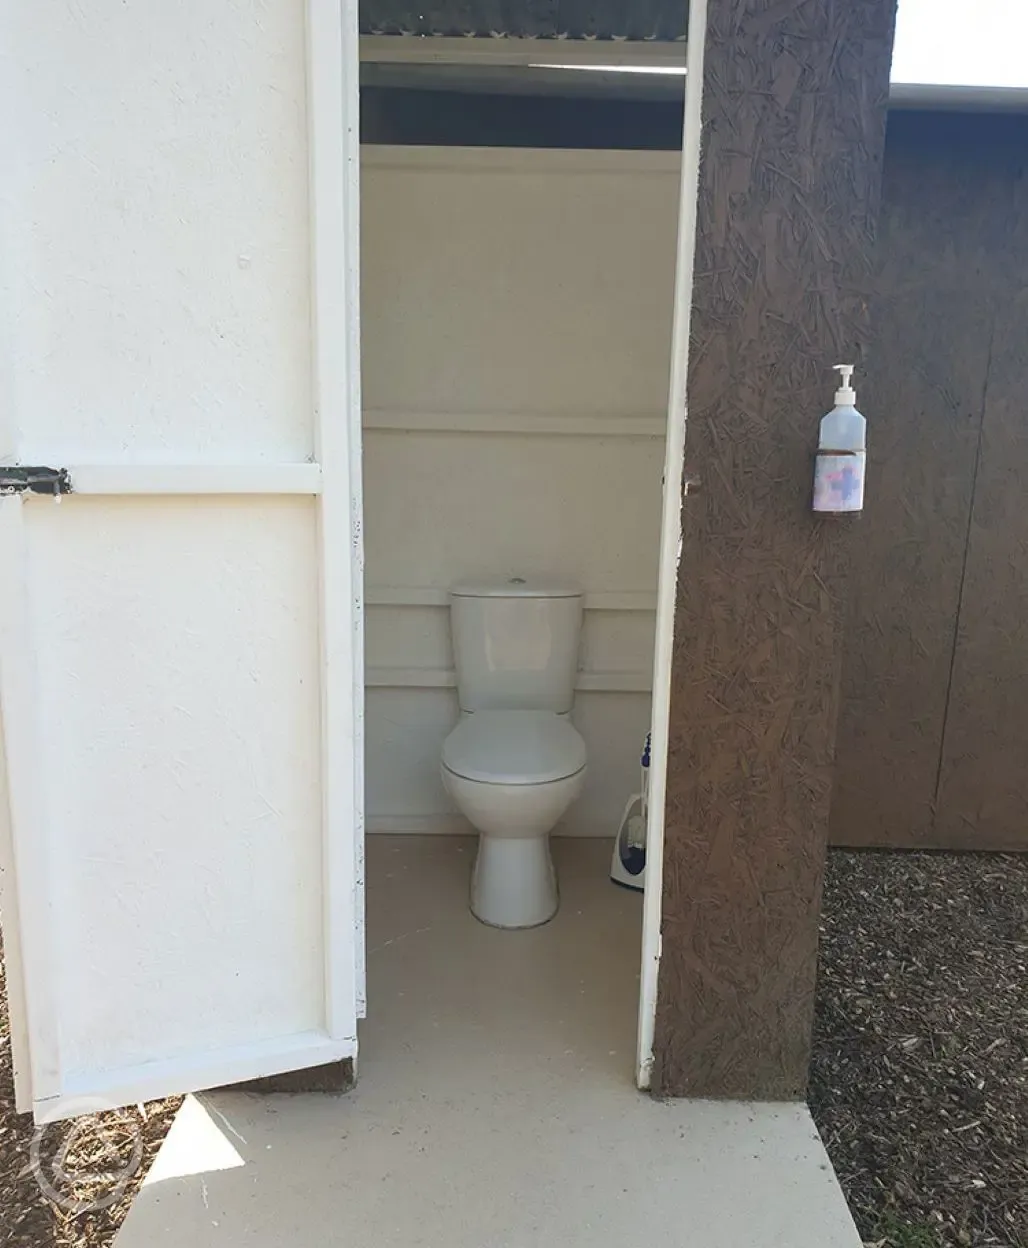 Meadow toilets